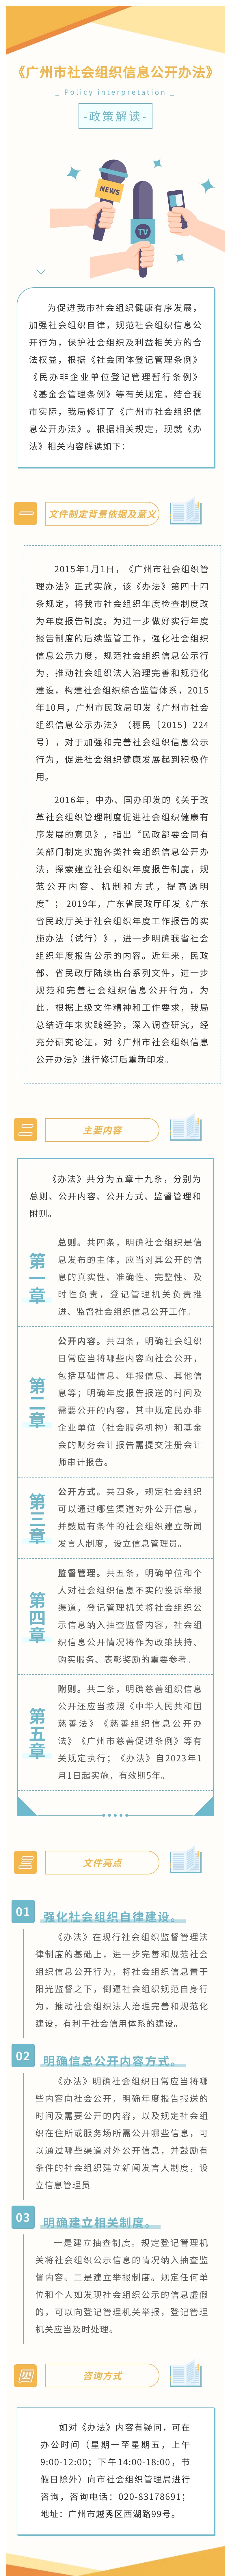 【一图读懂】关于《广州市社会组织信息公开办法》的政策解读.jpg